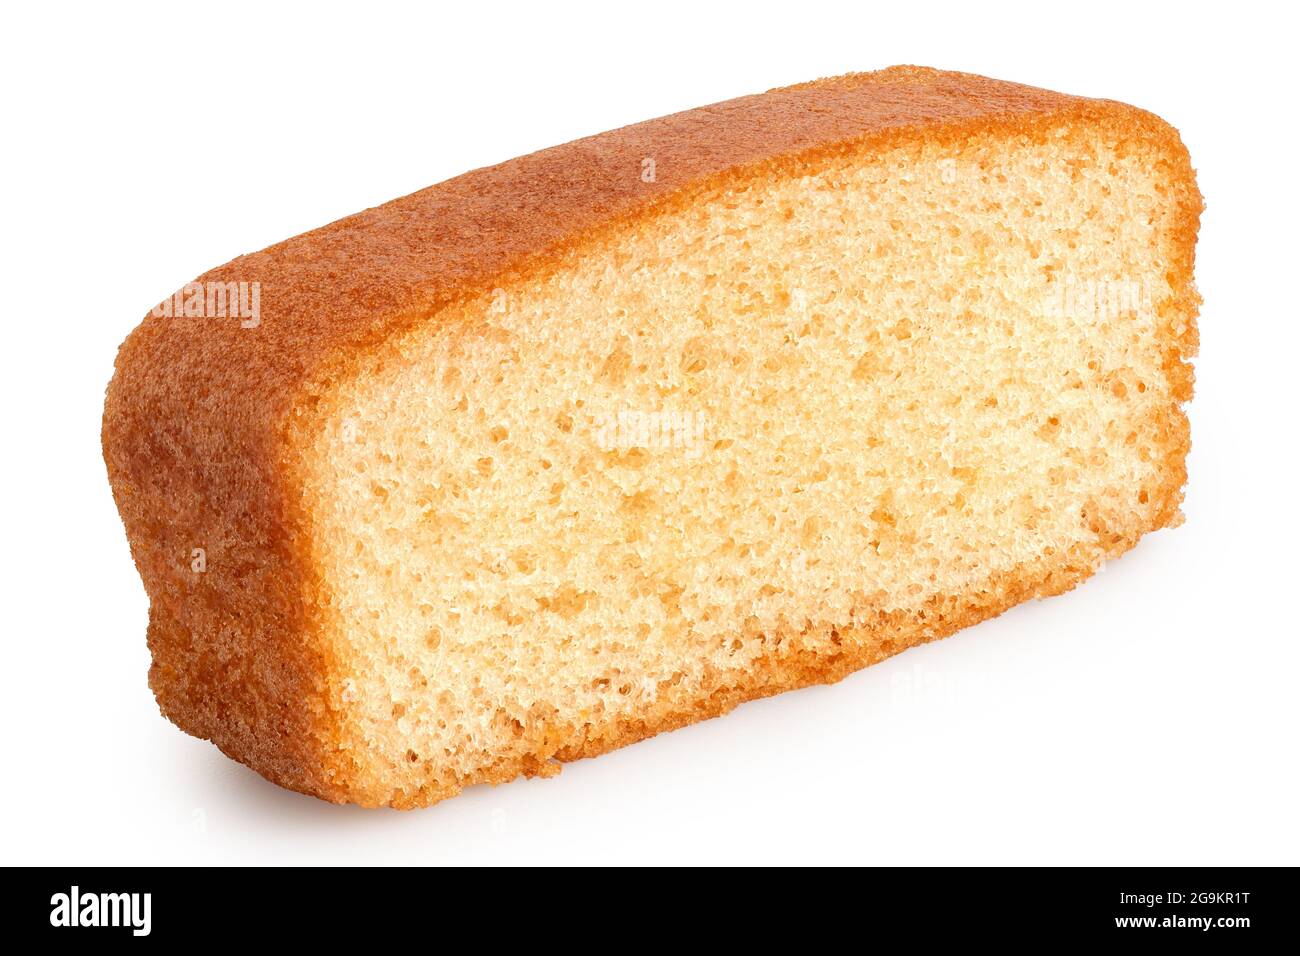 Slice of plain sponge cake isolated on white. Stock Photo